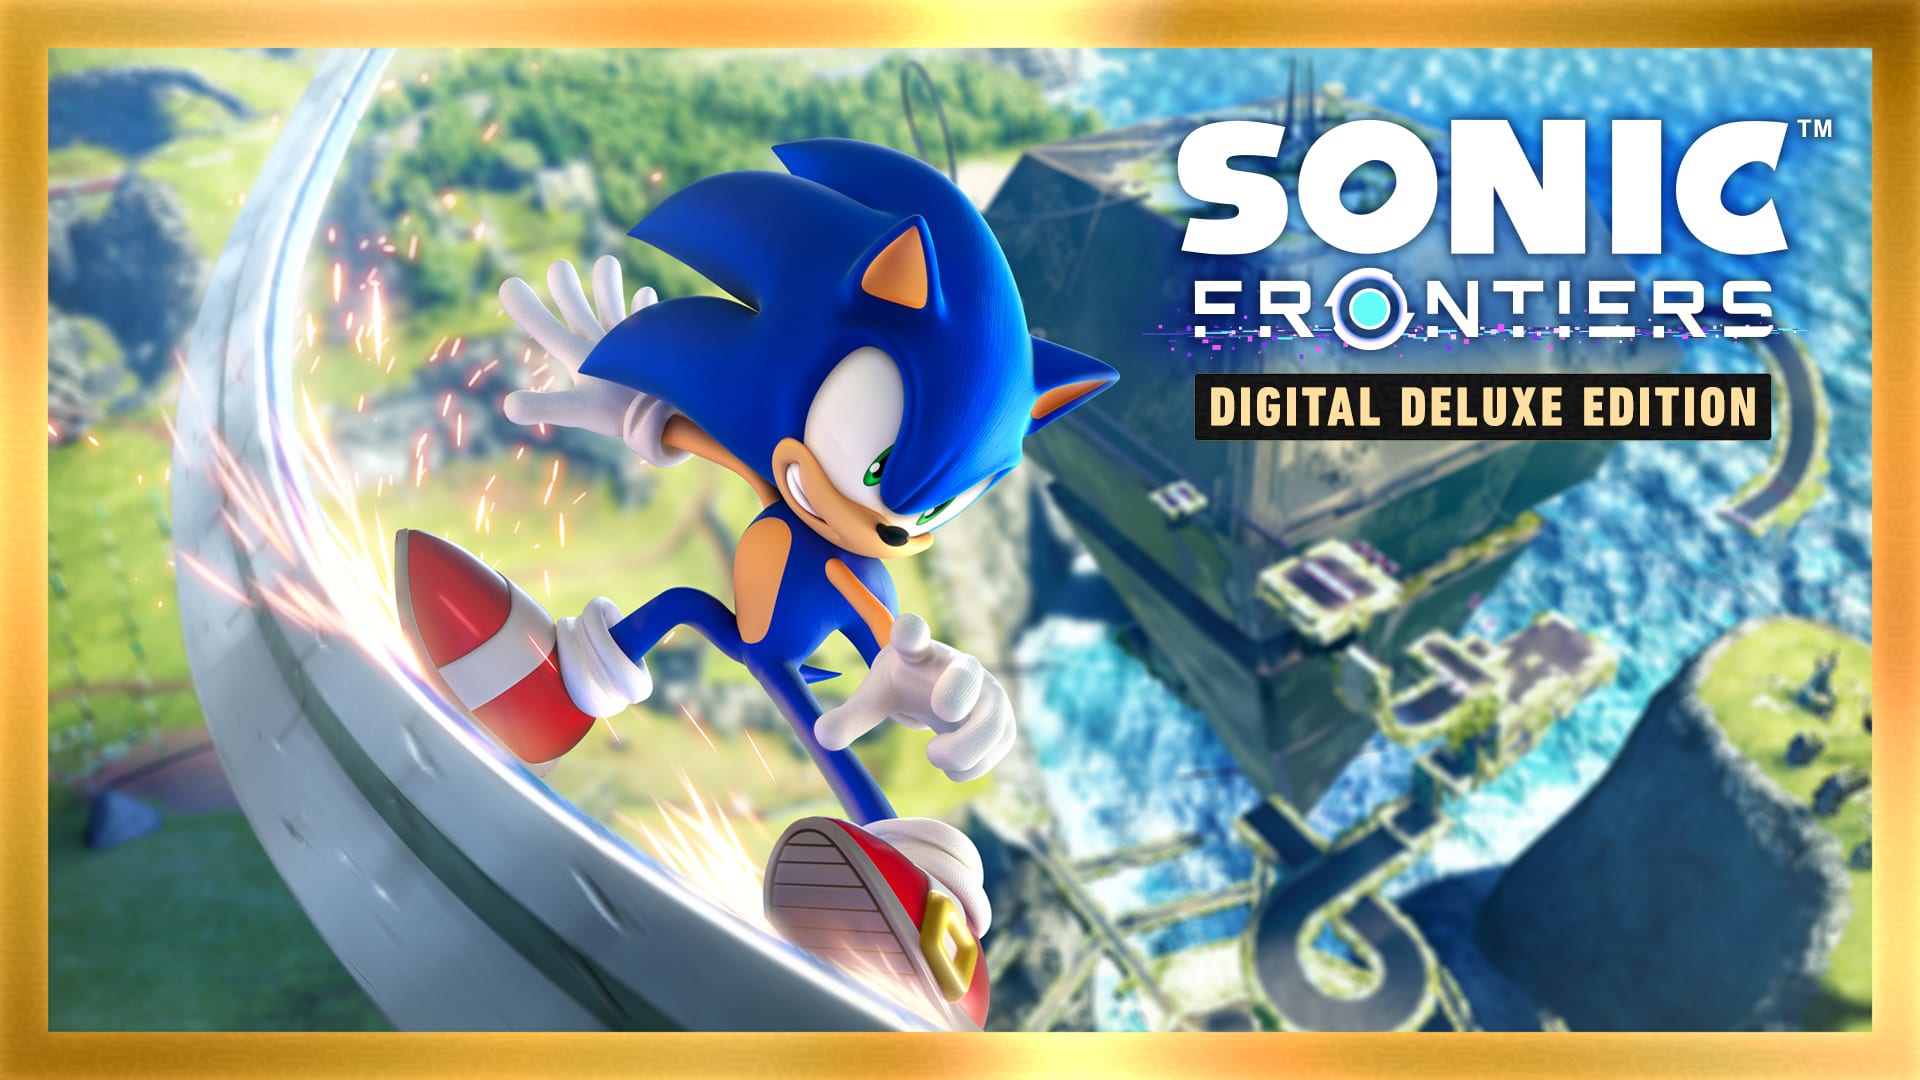 Edición digital deluxe de Sonic Frontiers